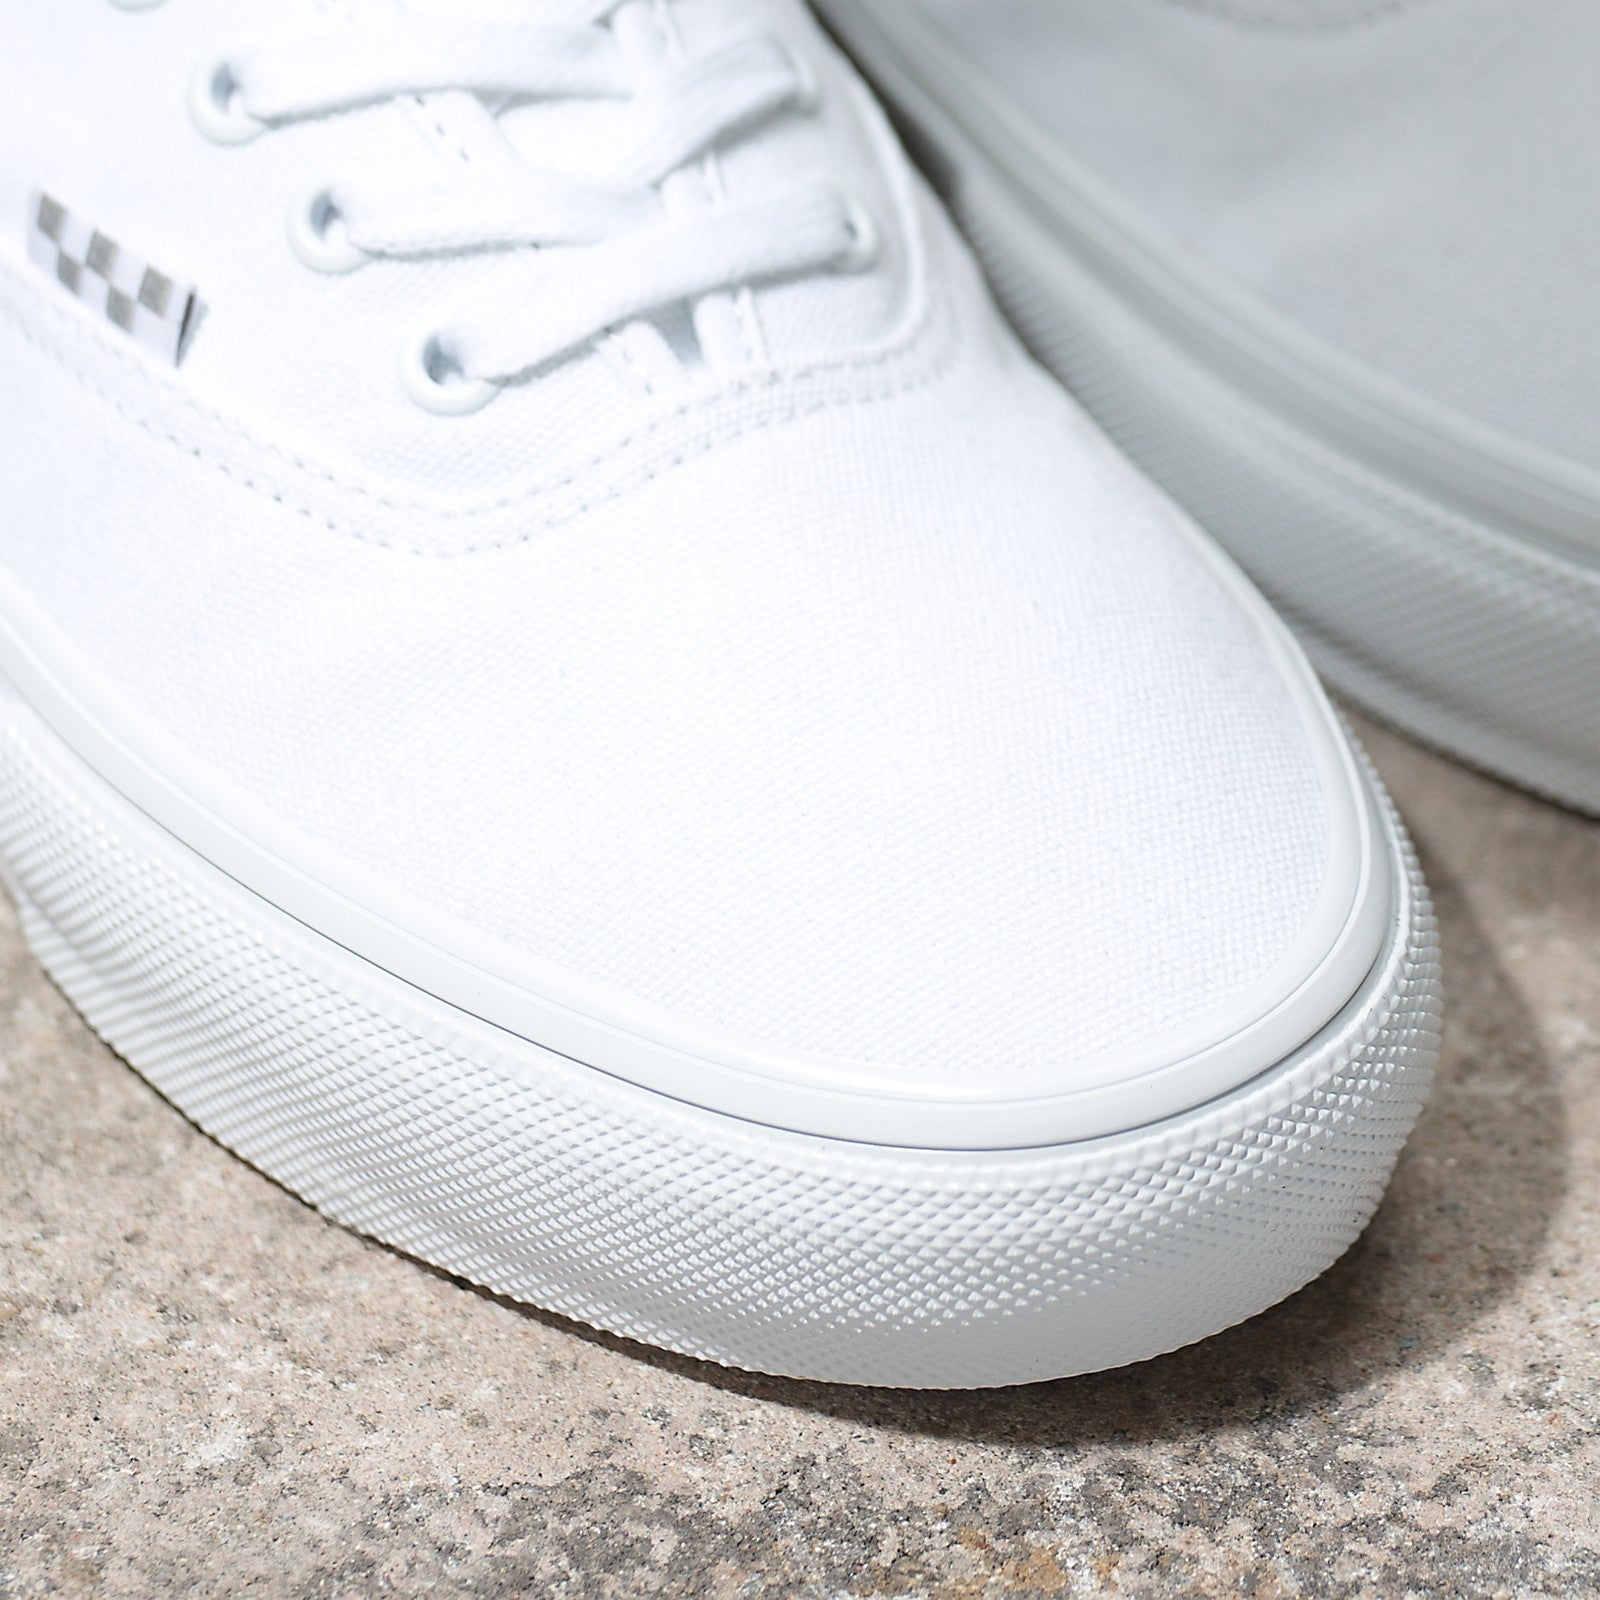 True White Skate Authentic Vans Skateboarding Shoe Detail